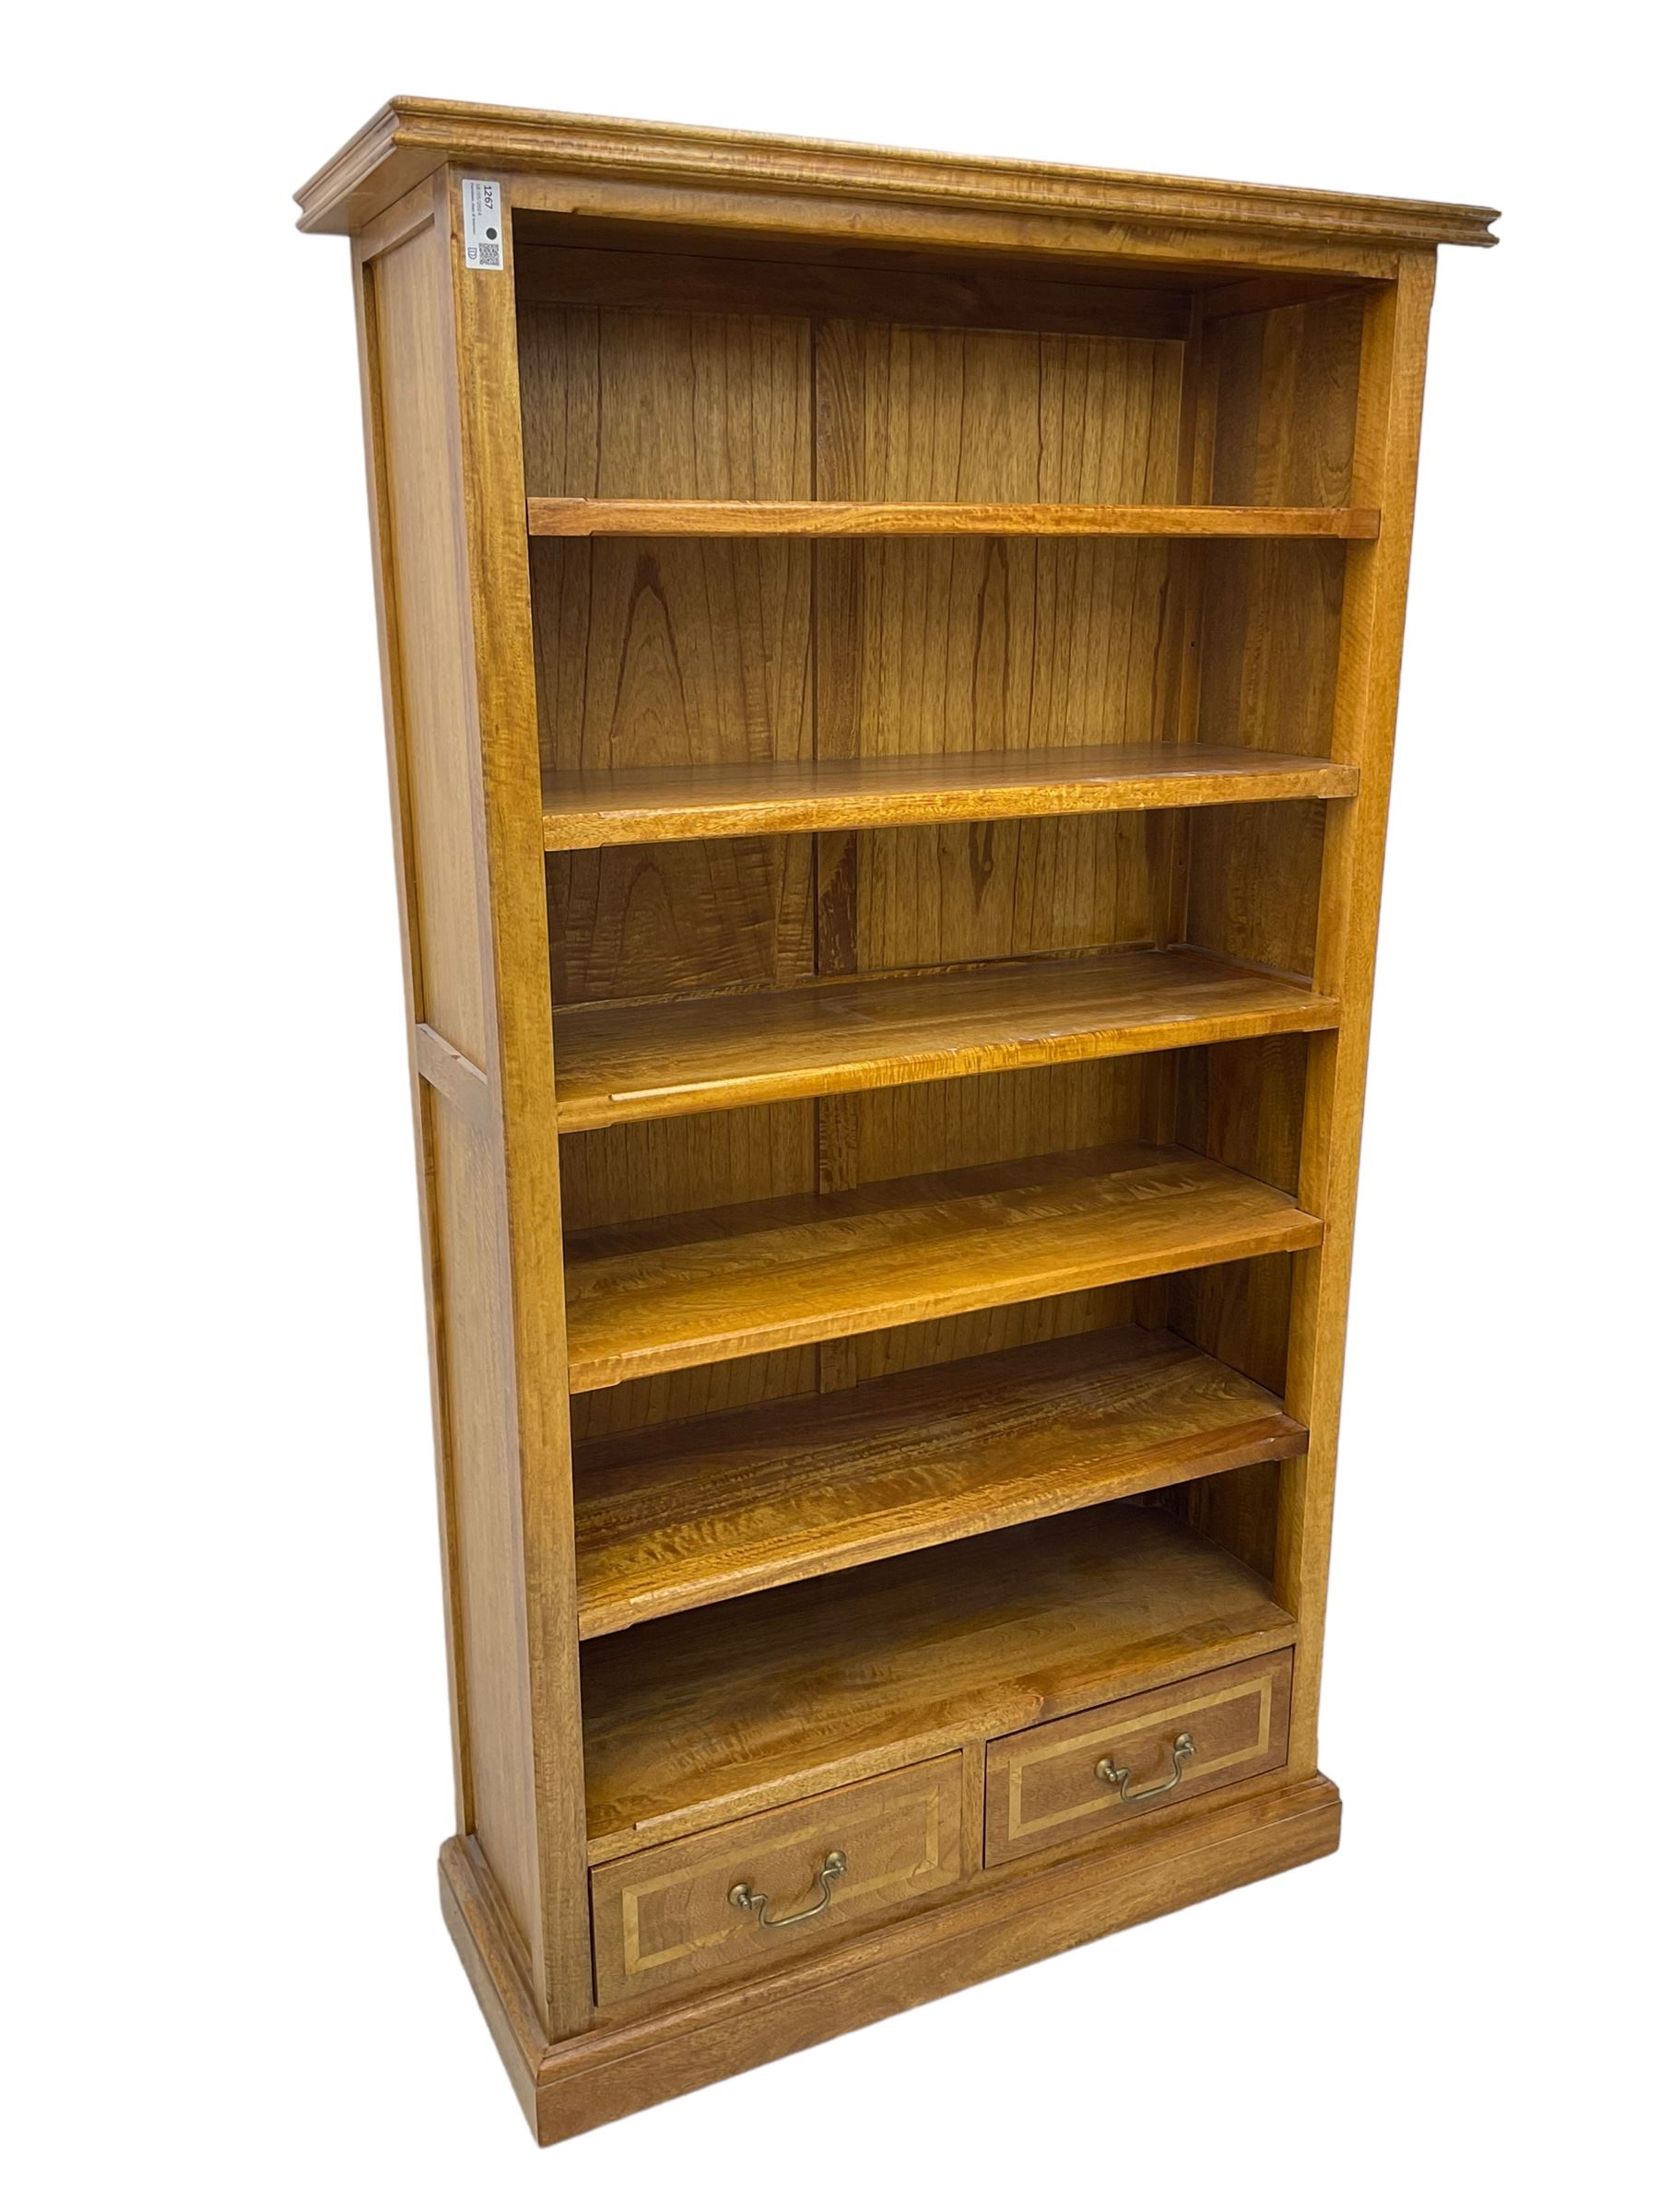 Hardwood open bookcase - Image 2 of 5